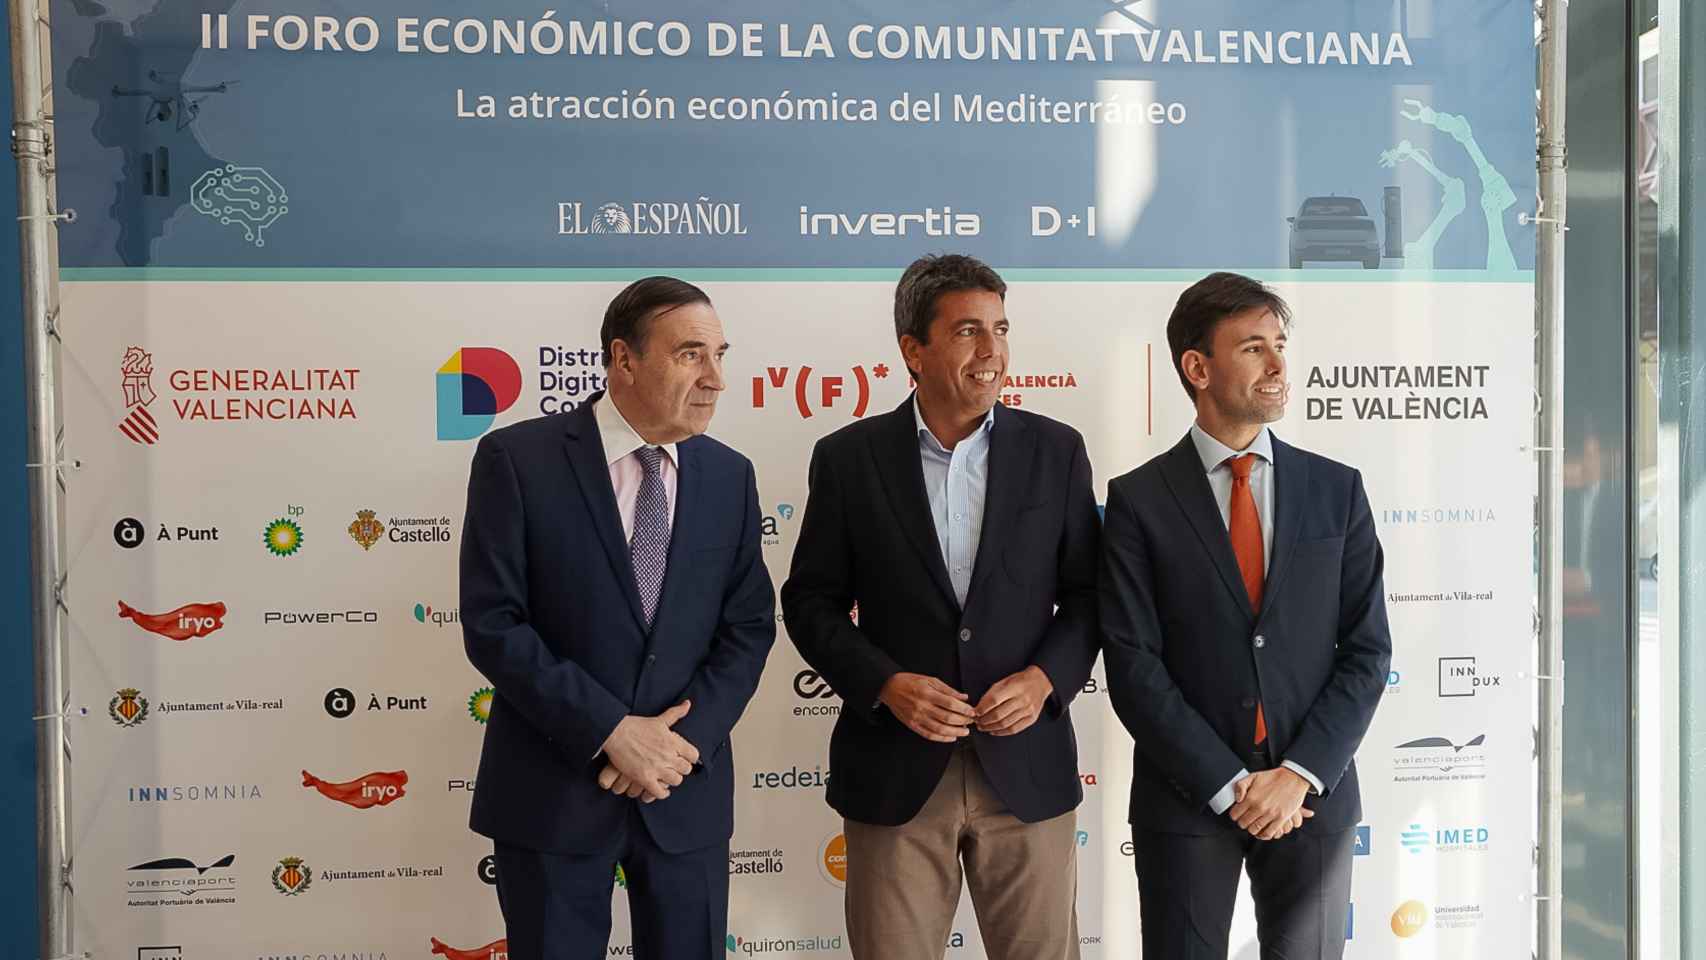 Primera jornada del II Foro Económico de la Comunitat Valenciana 'La atracción económica del Mediterráneo'